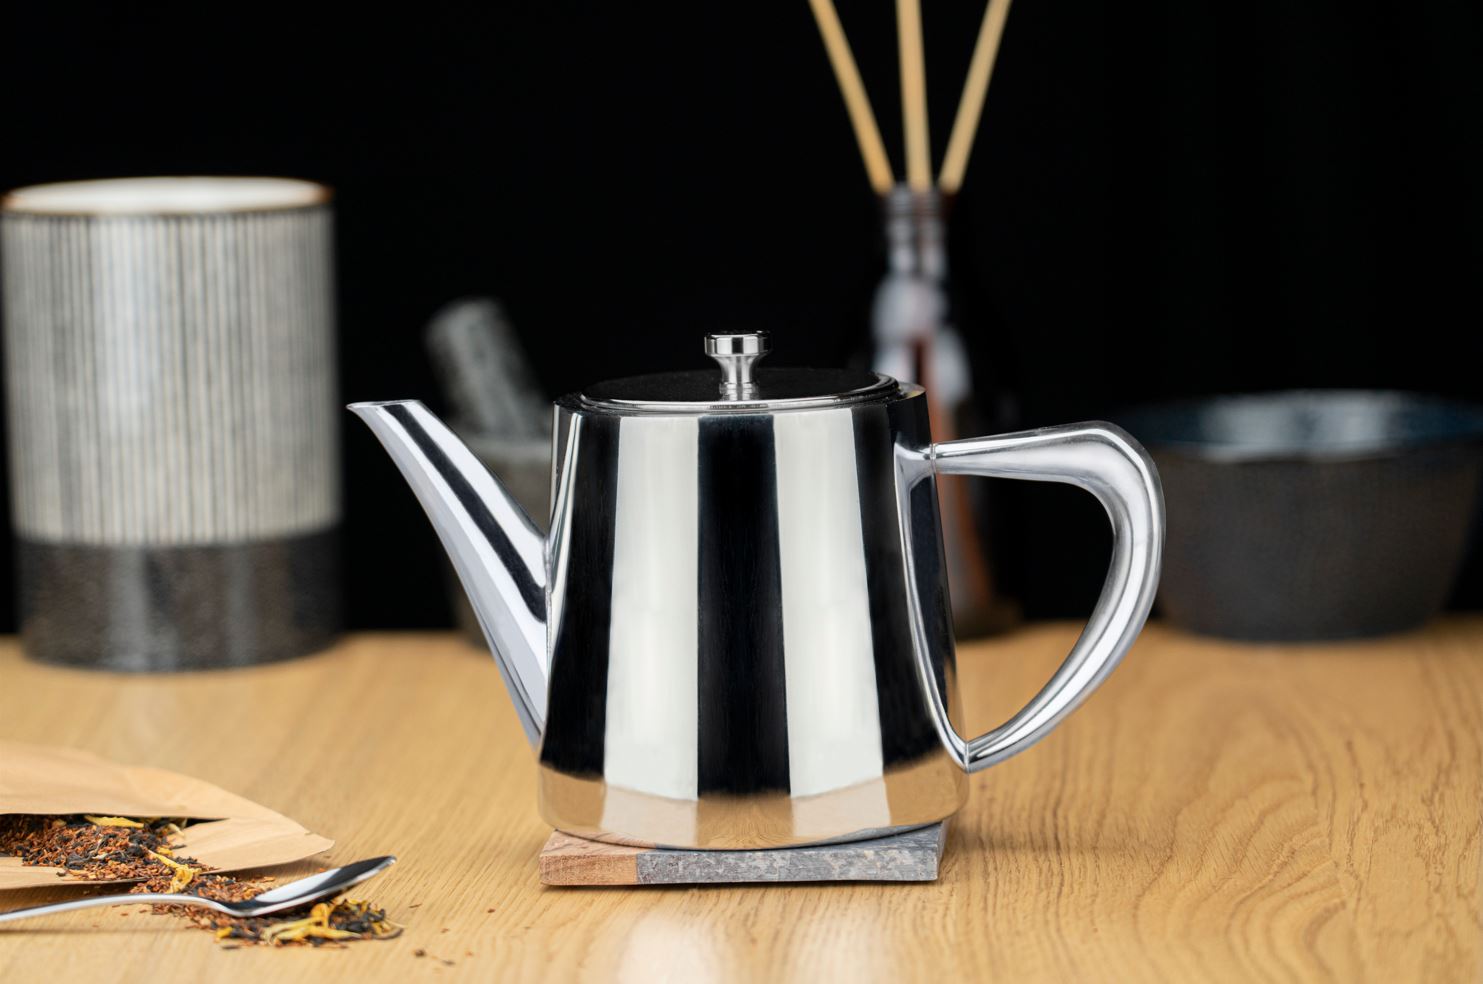 Café Olé 0.5L Teapot, Stainless Steel – Grunwerg